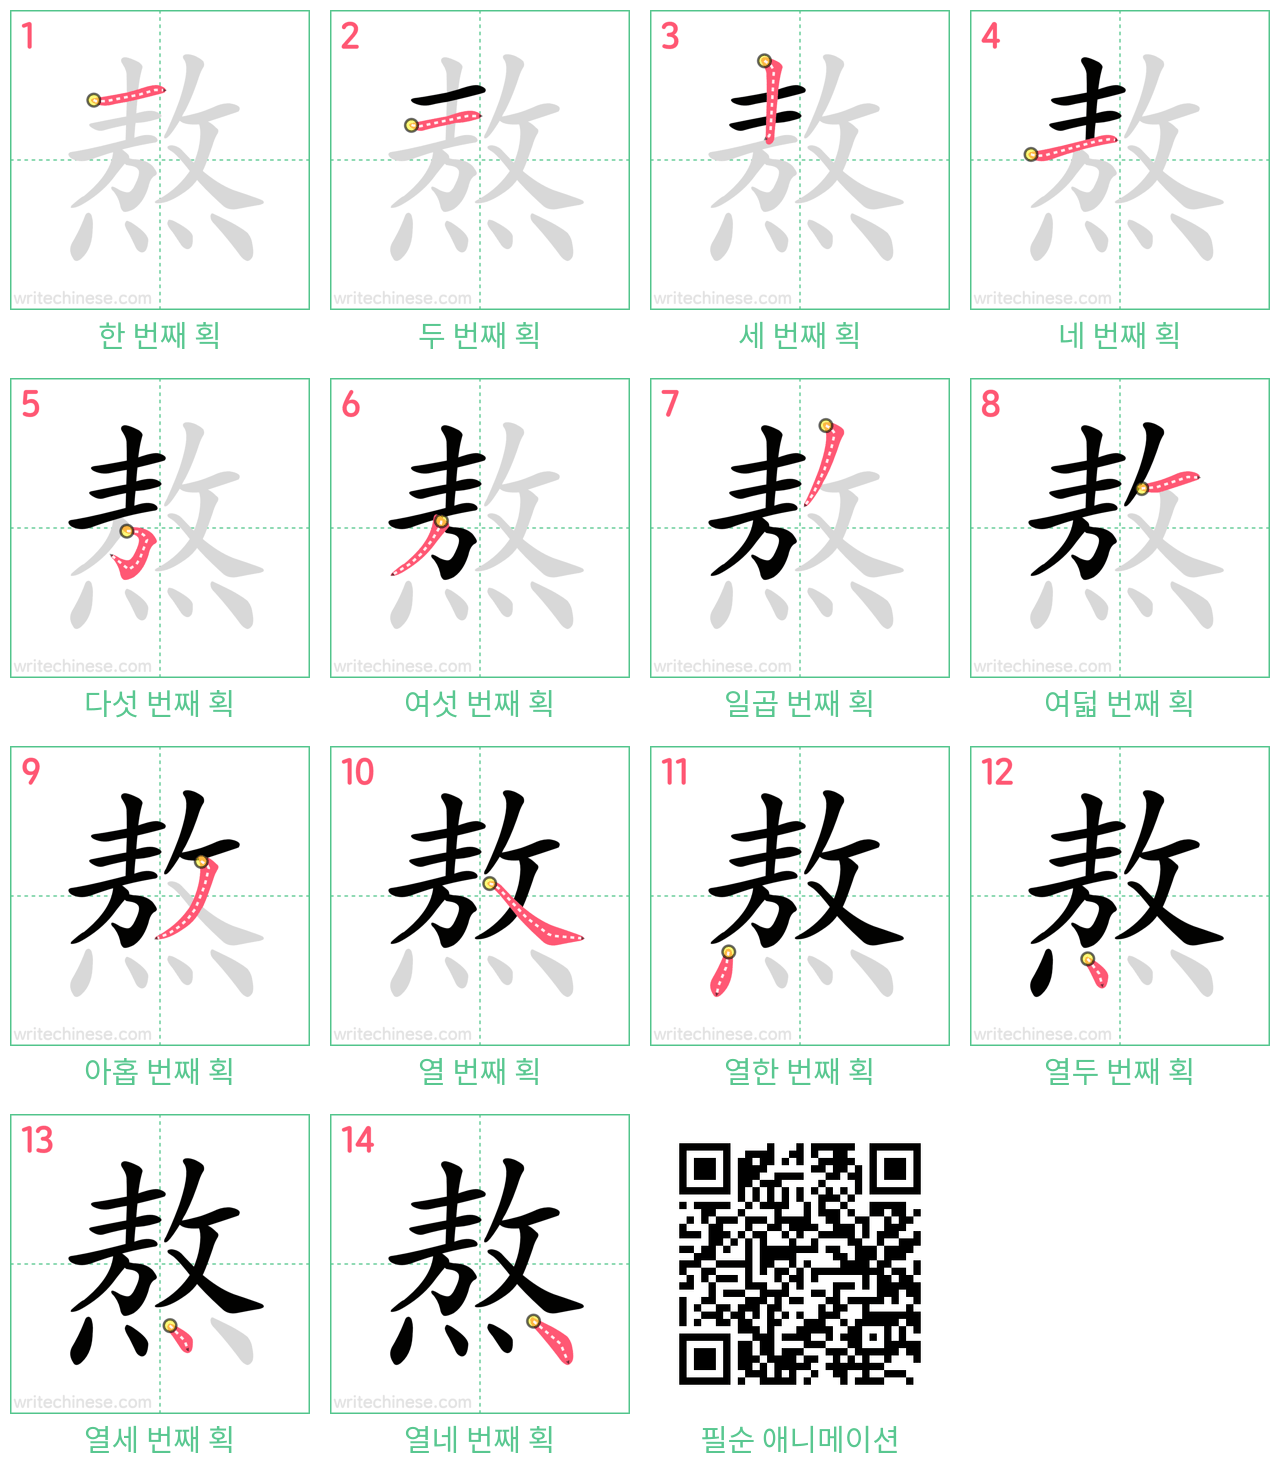 熬 step-by-step stroke order diagrams